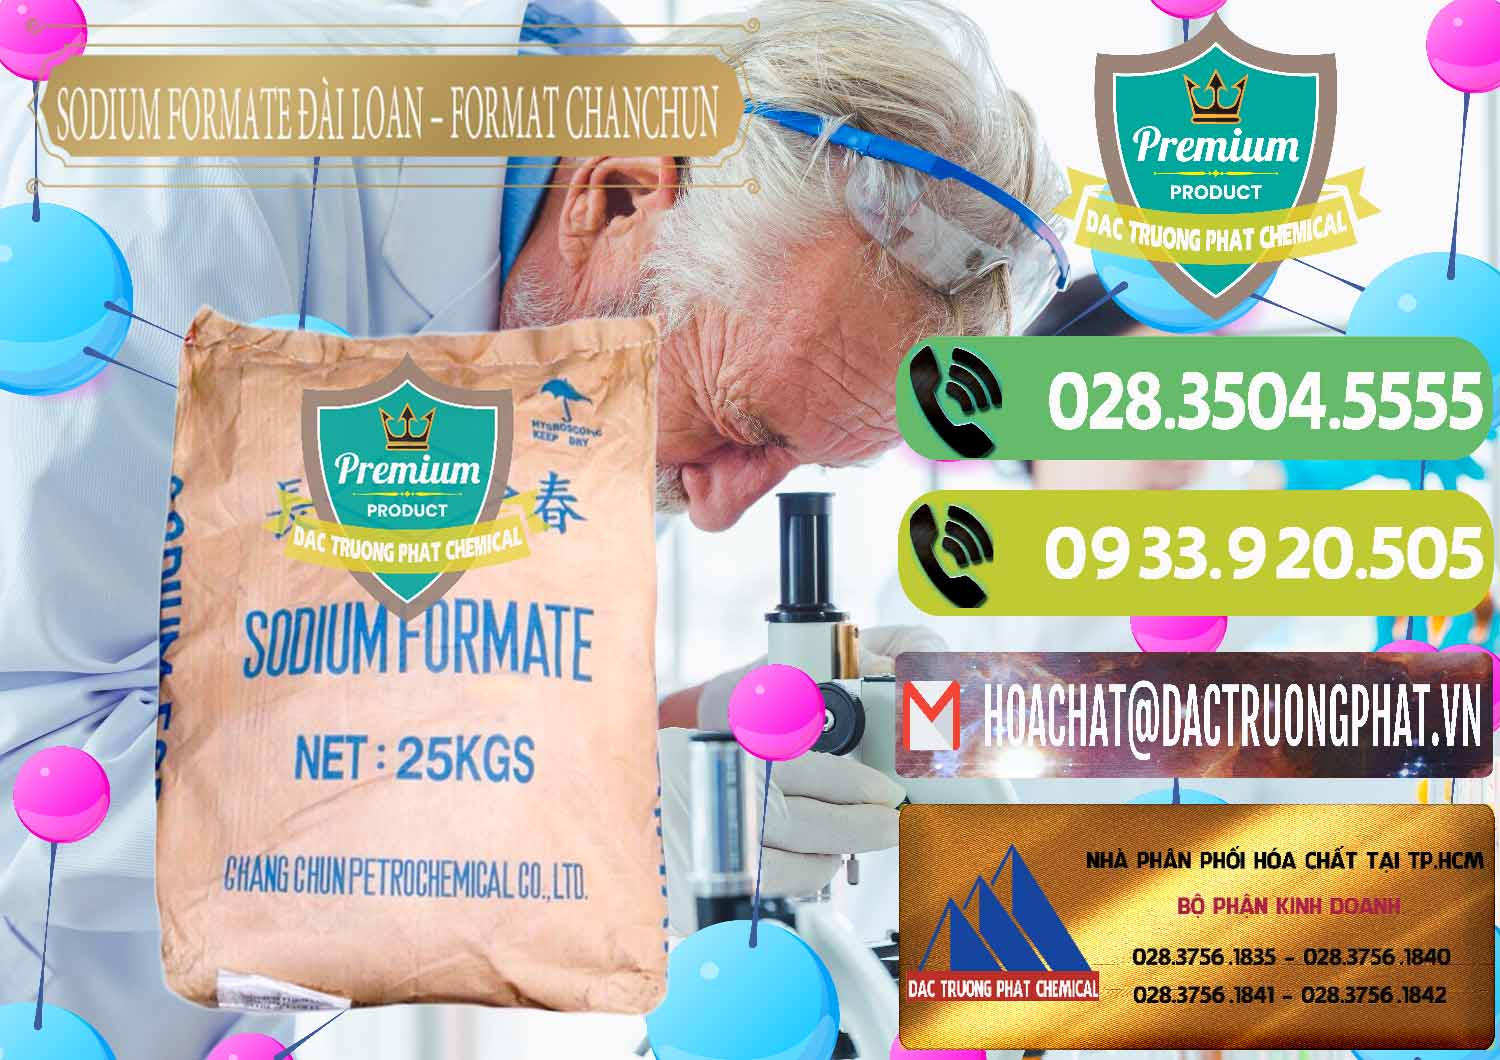 Chuyên bán _ cung ứng Sodium Formate - Natri Format Đài Loan Taiwan - 0141 - Cty phân phối ( cung ứng ) hóa chất tại TP.HCM - hoachatmientay.vn